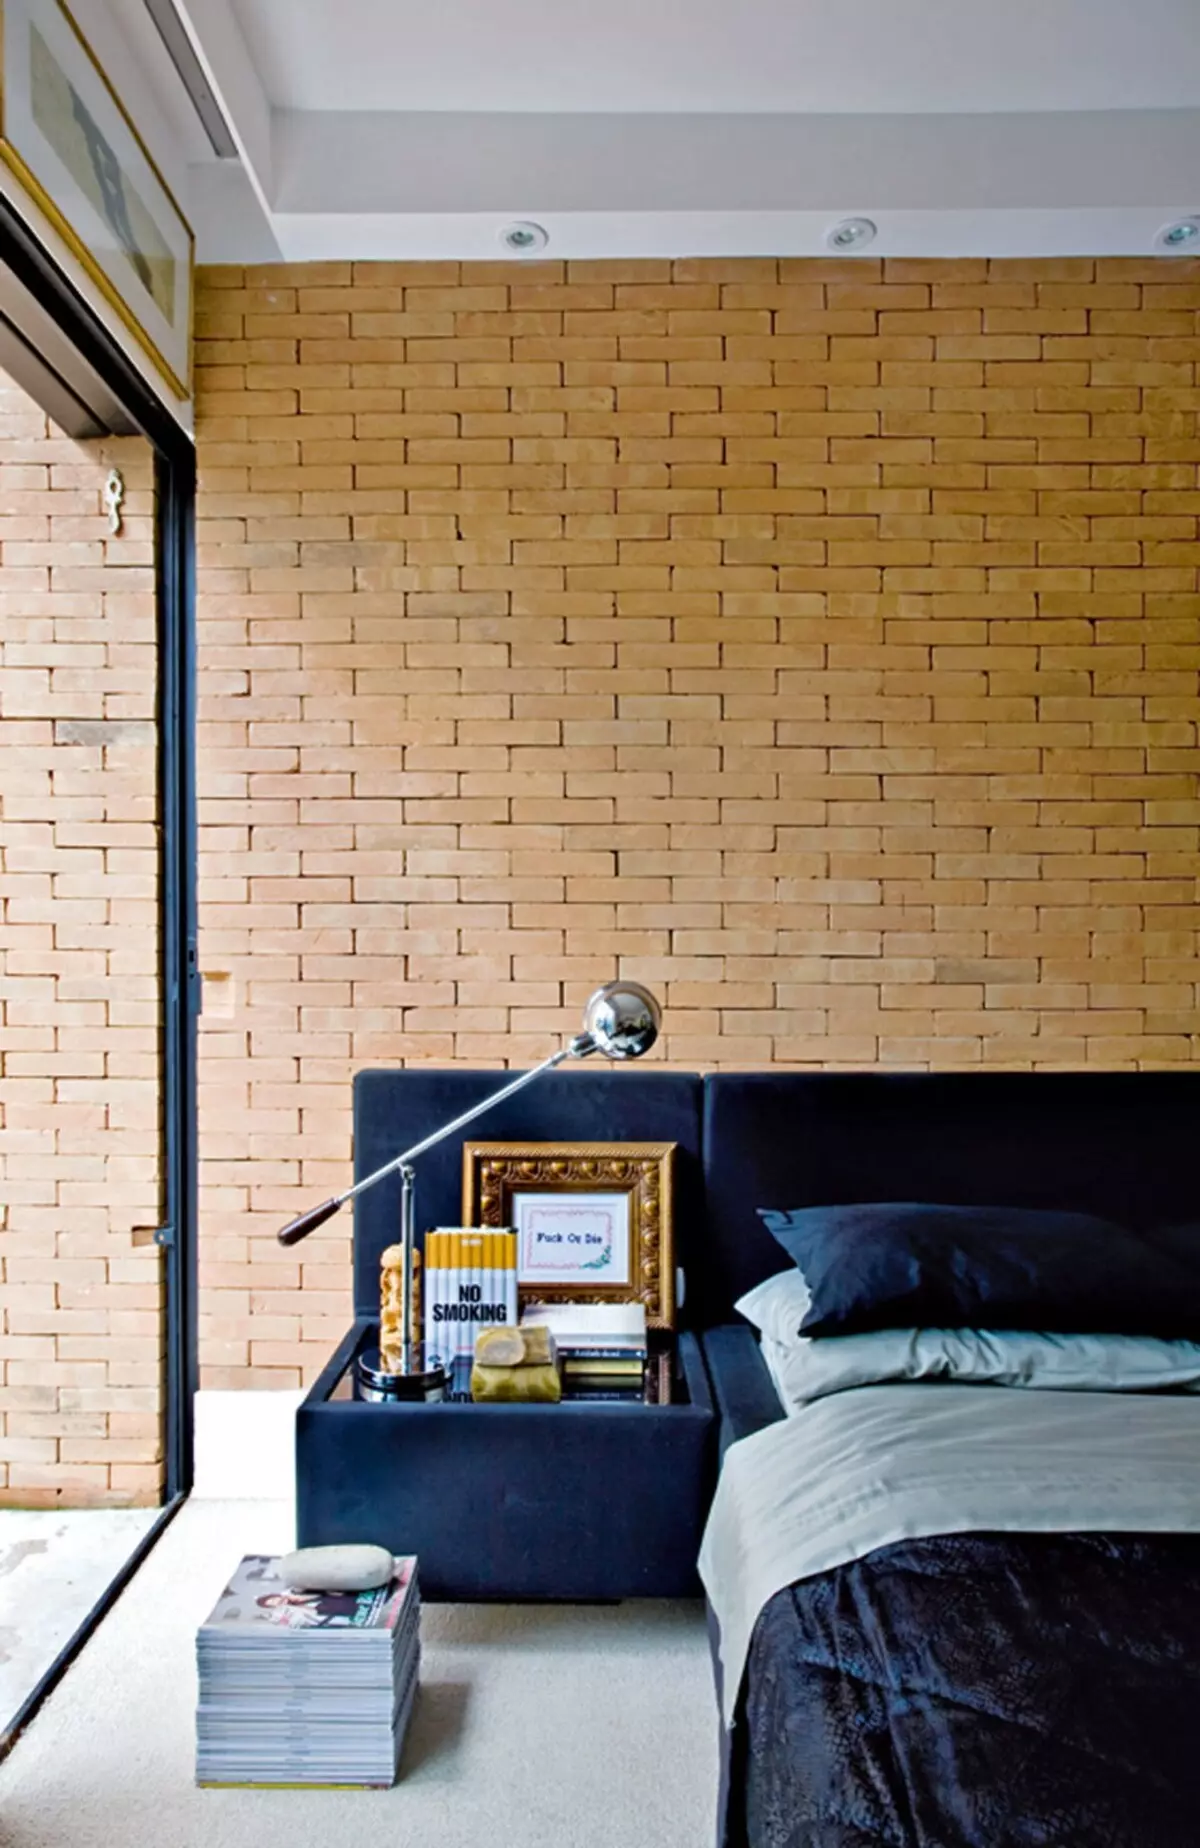 Brickwork als Interieur Element